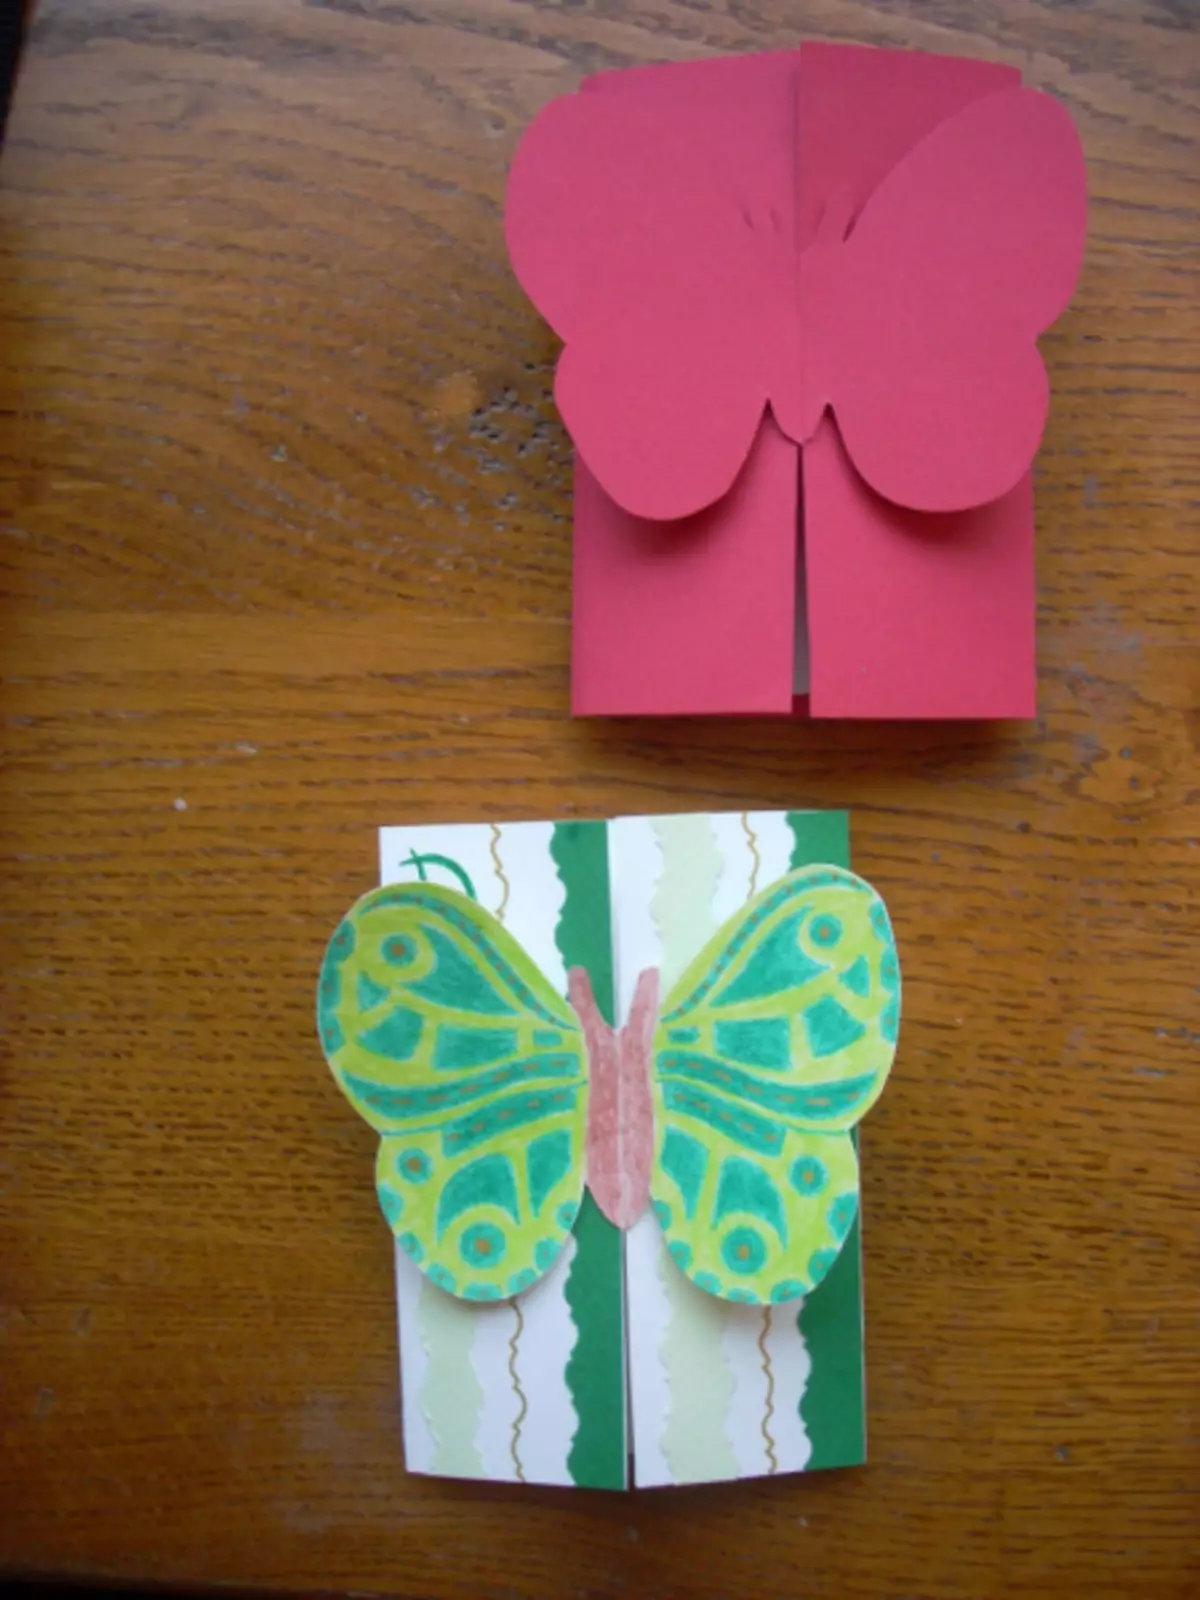 Bulk sommerfugl med egne hender på et postkort laget av farget papir